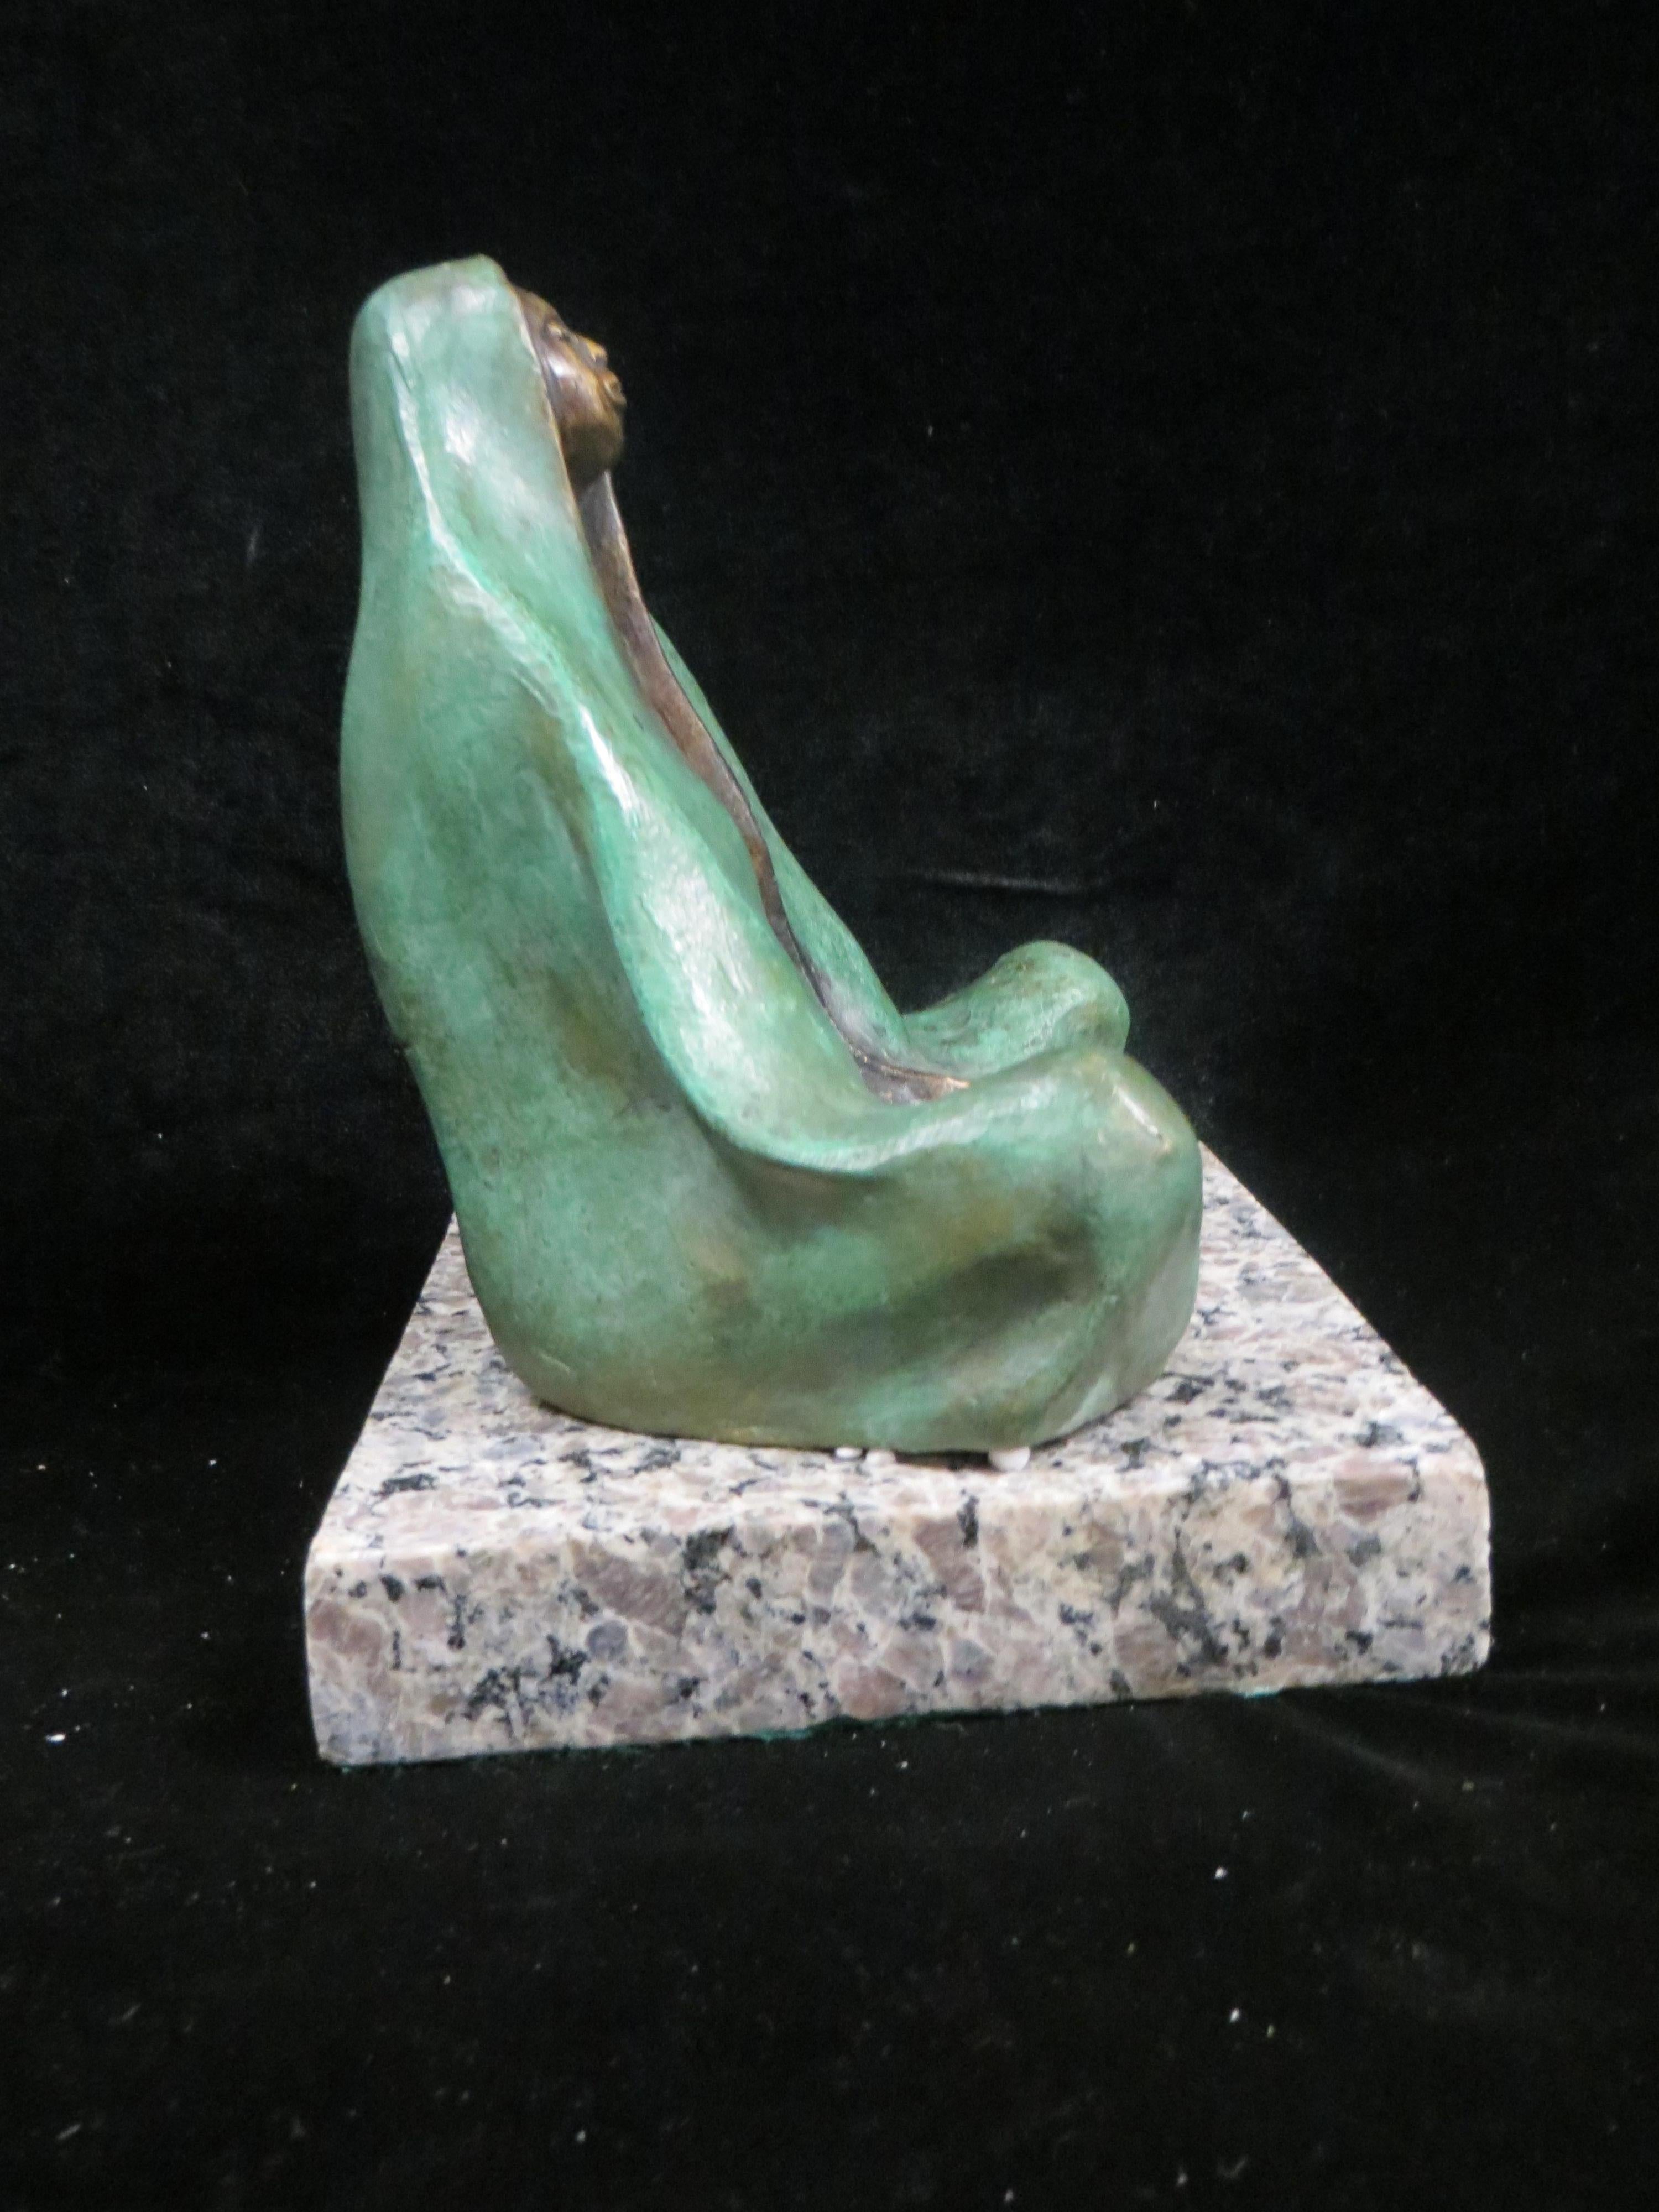   Mother Sitting by Edgar Zuniga  - Gold Figurative Sculpture by Edgar zuniga